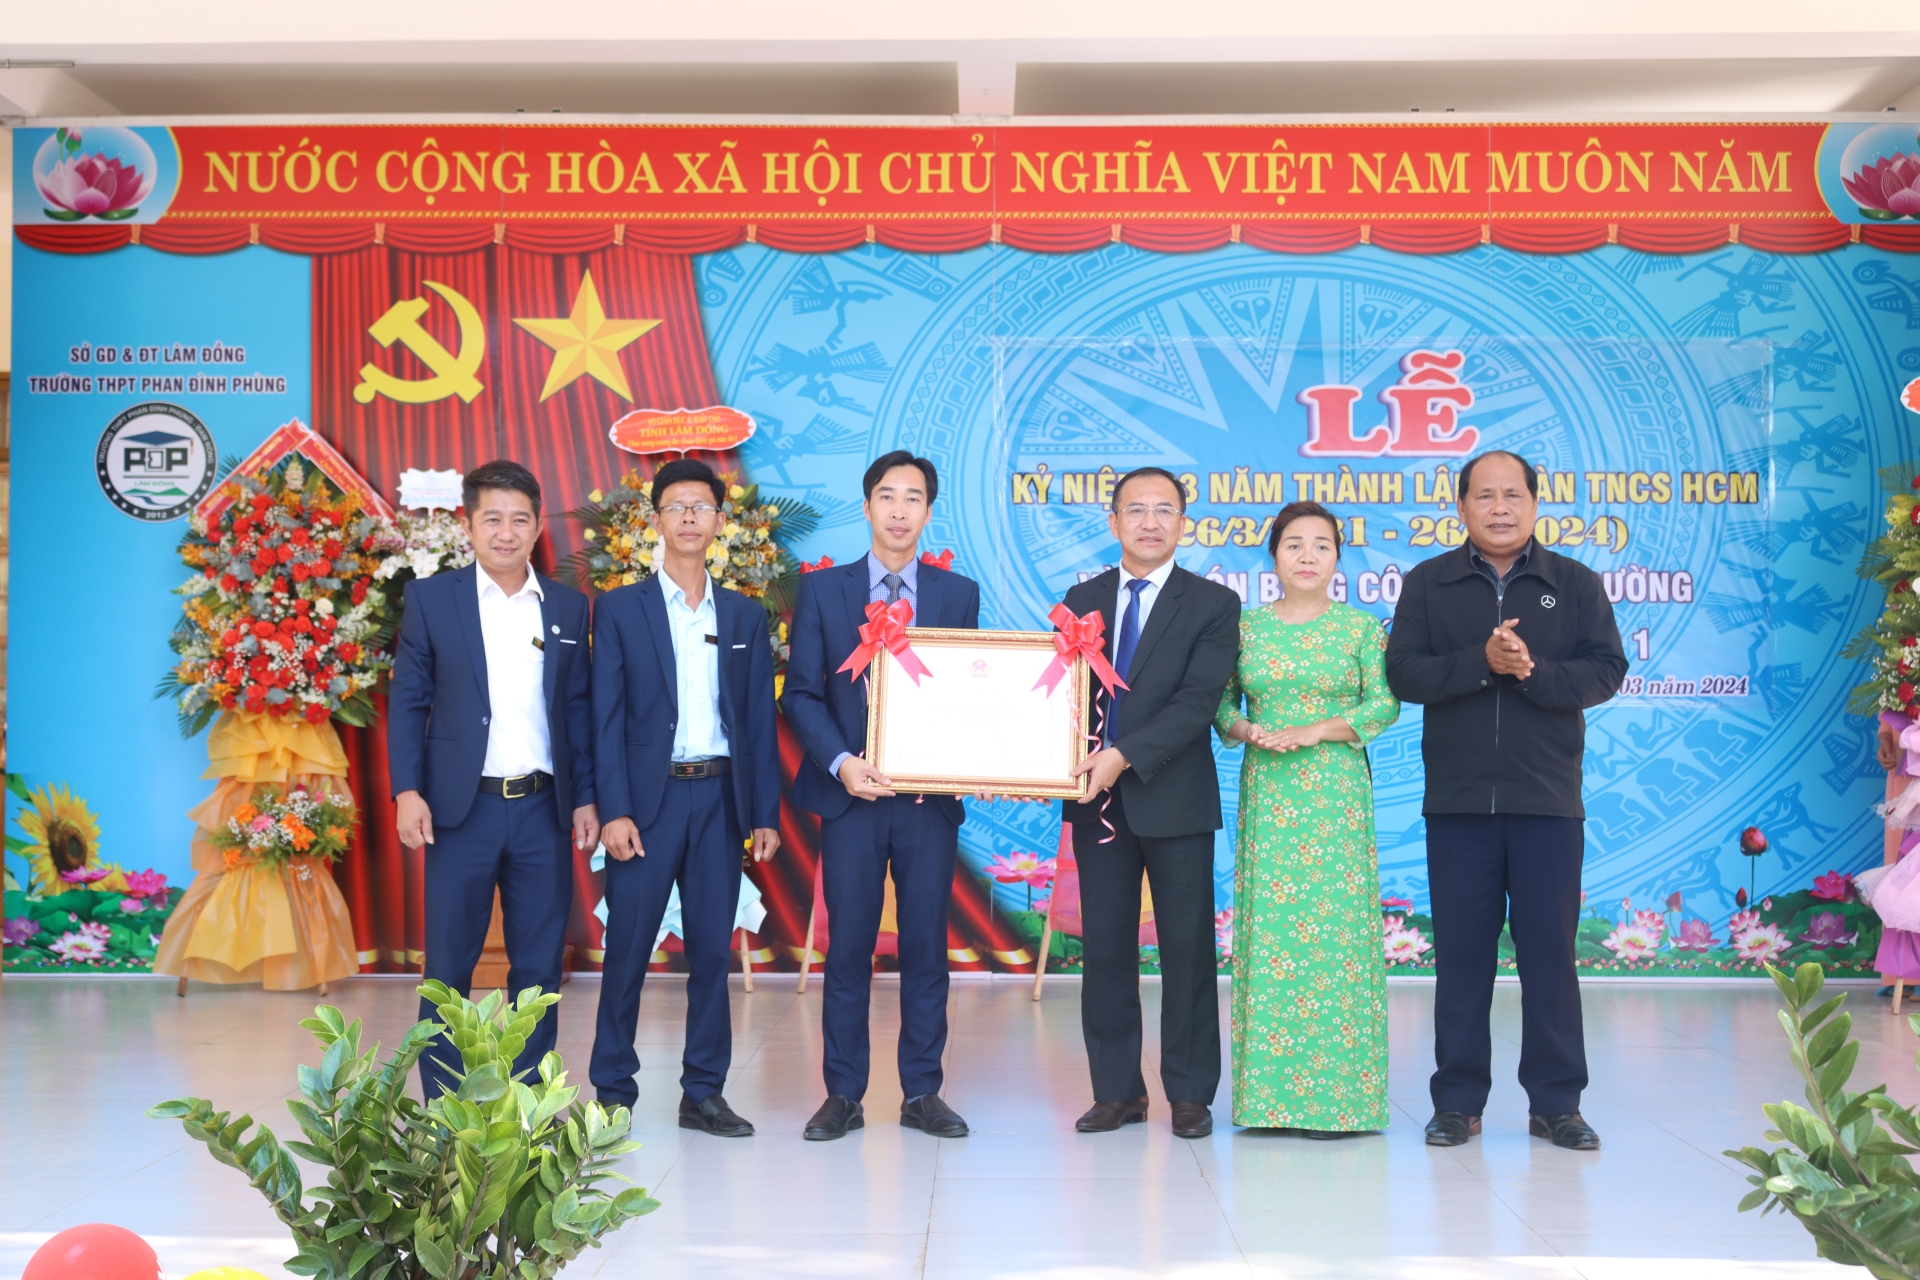 Ông Trần Đức Lợi – Phó Giám đốc Sở Giáo dục và Đào tạo tỉnh cùng lãnh đạo địa phương trao Bằng Công nhận cho Trường THPT Phan Đình Phùng